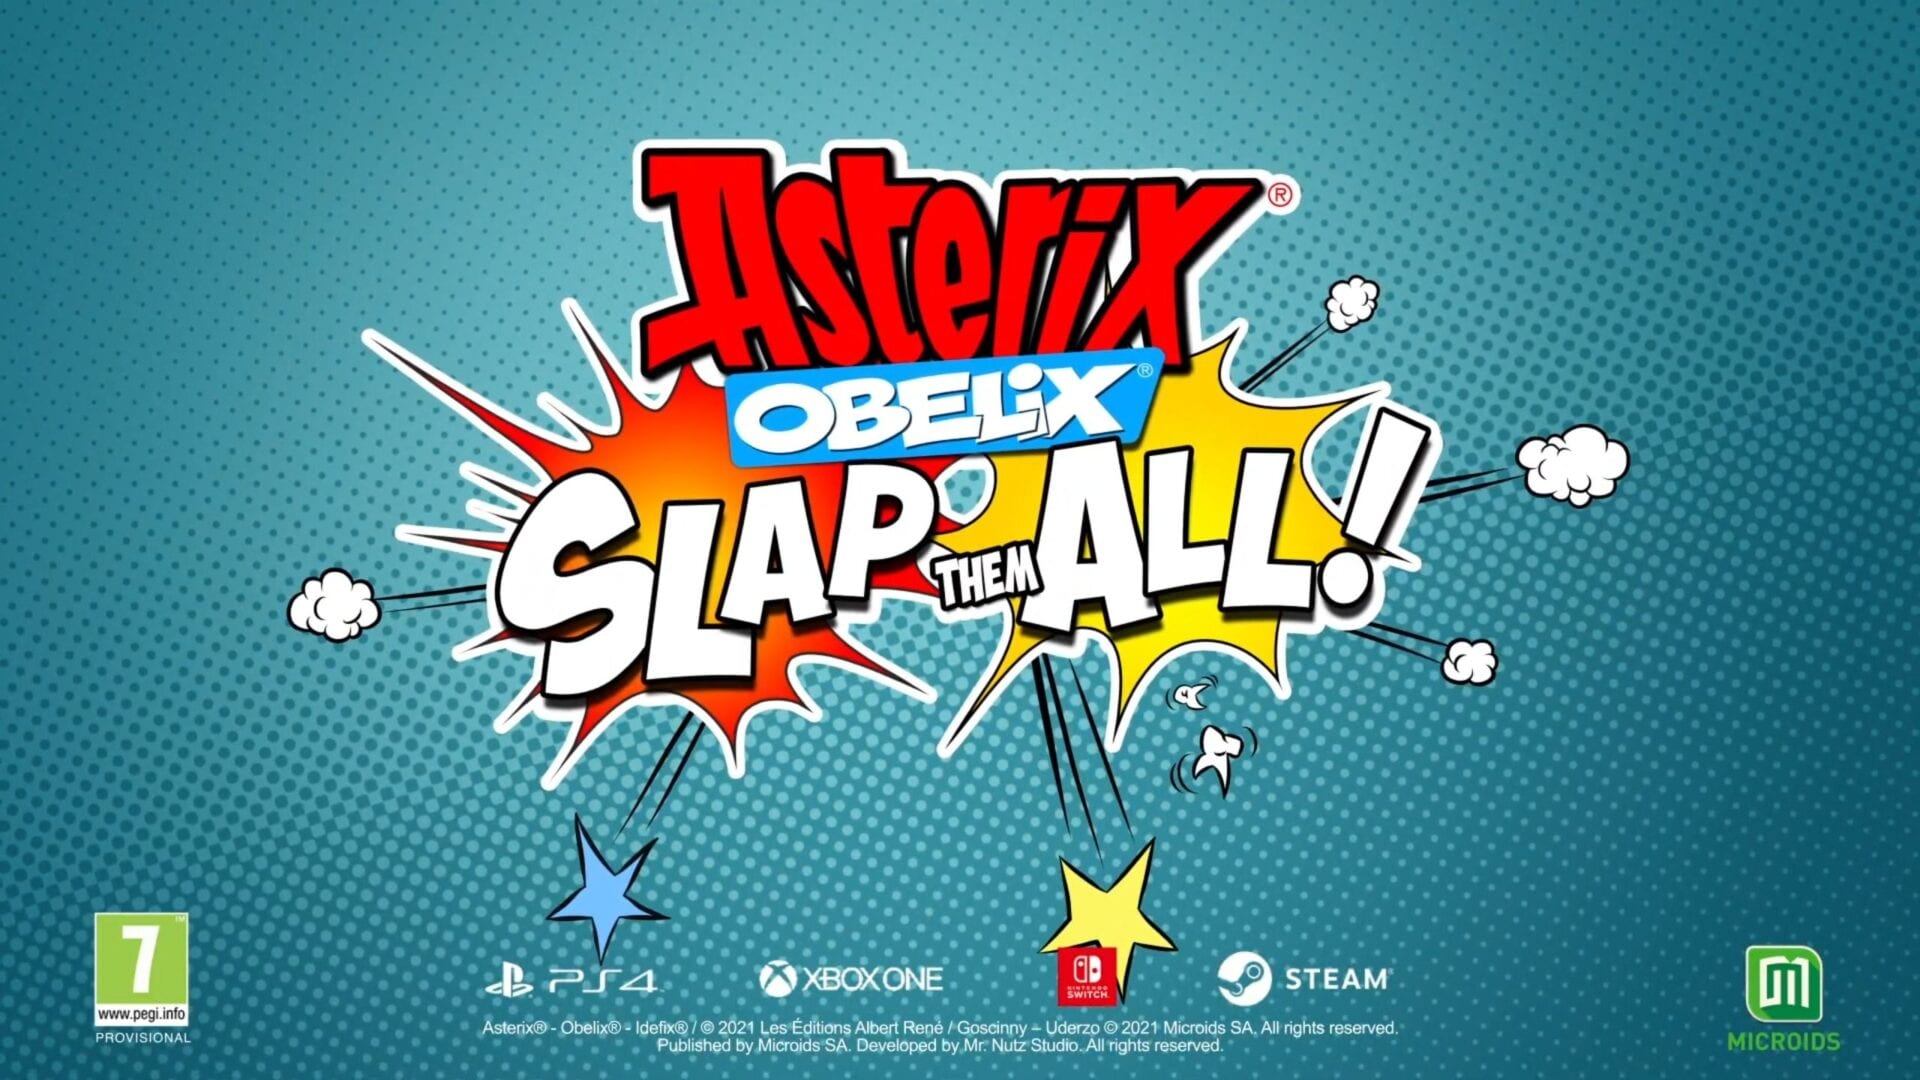 Asterix & Obelix Slap them all